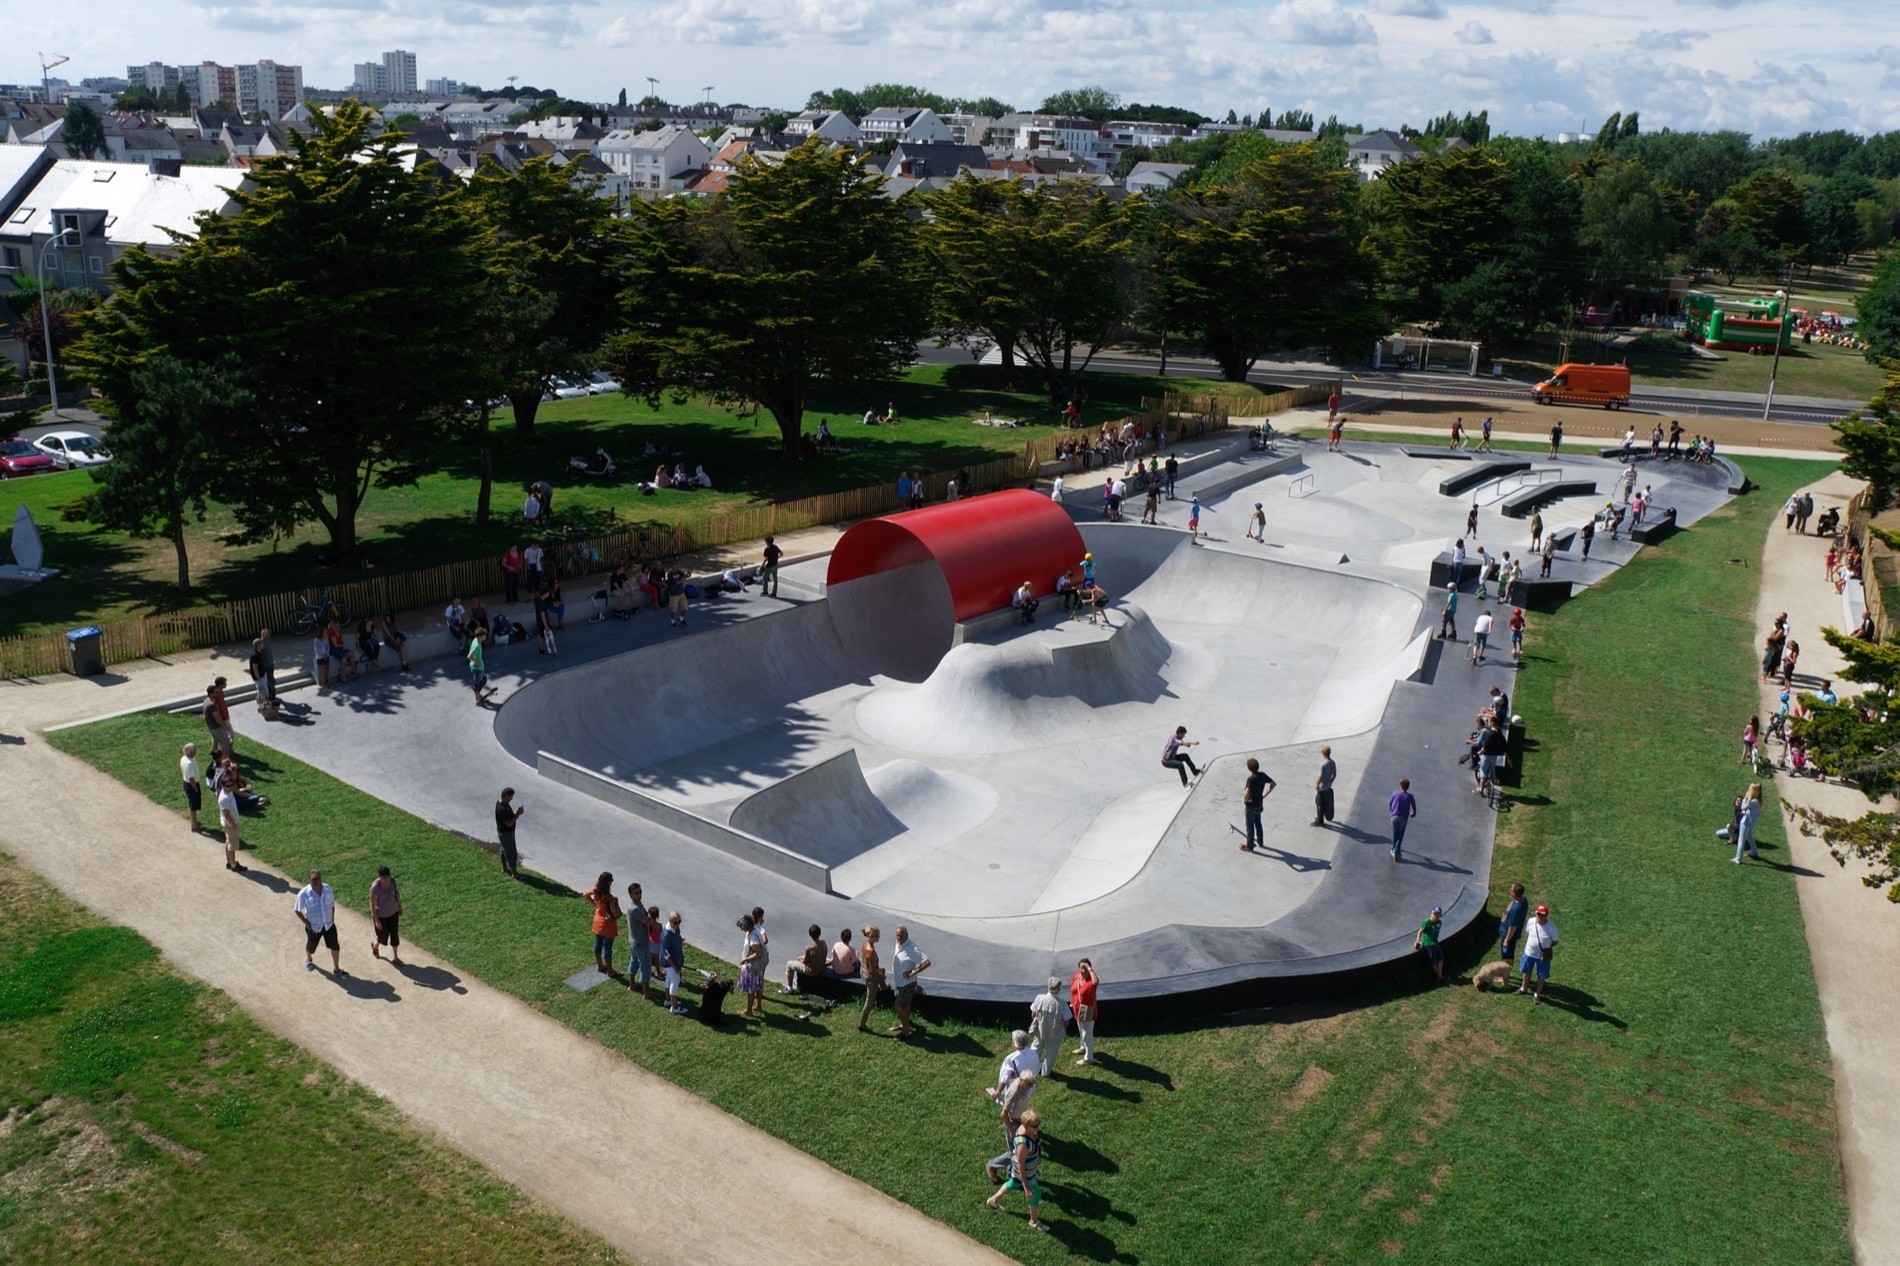 Saint Nazaire skatepark